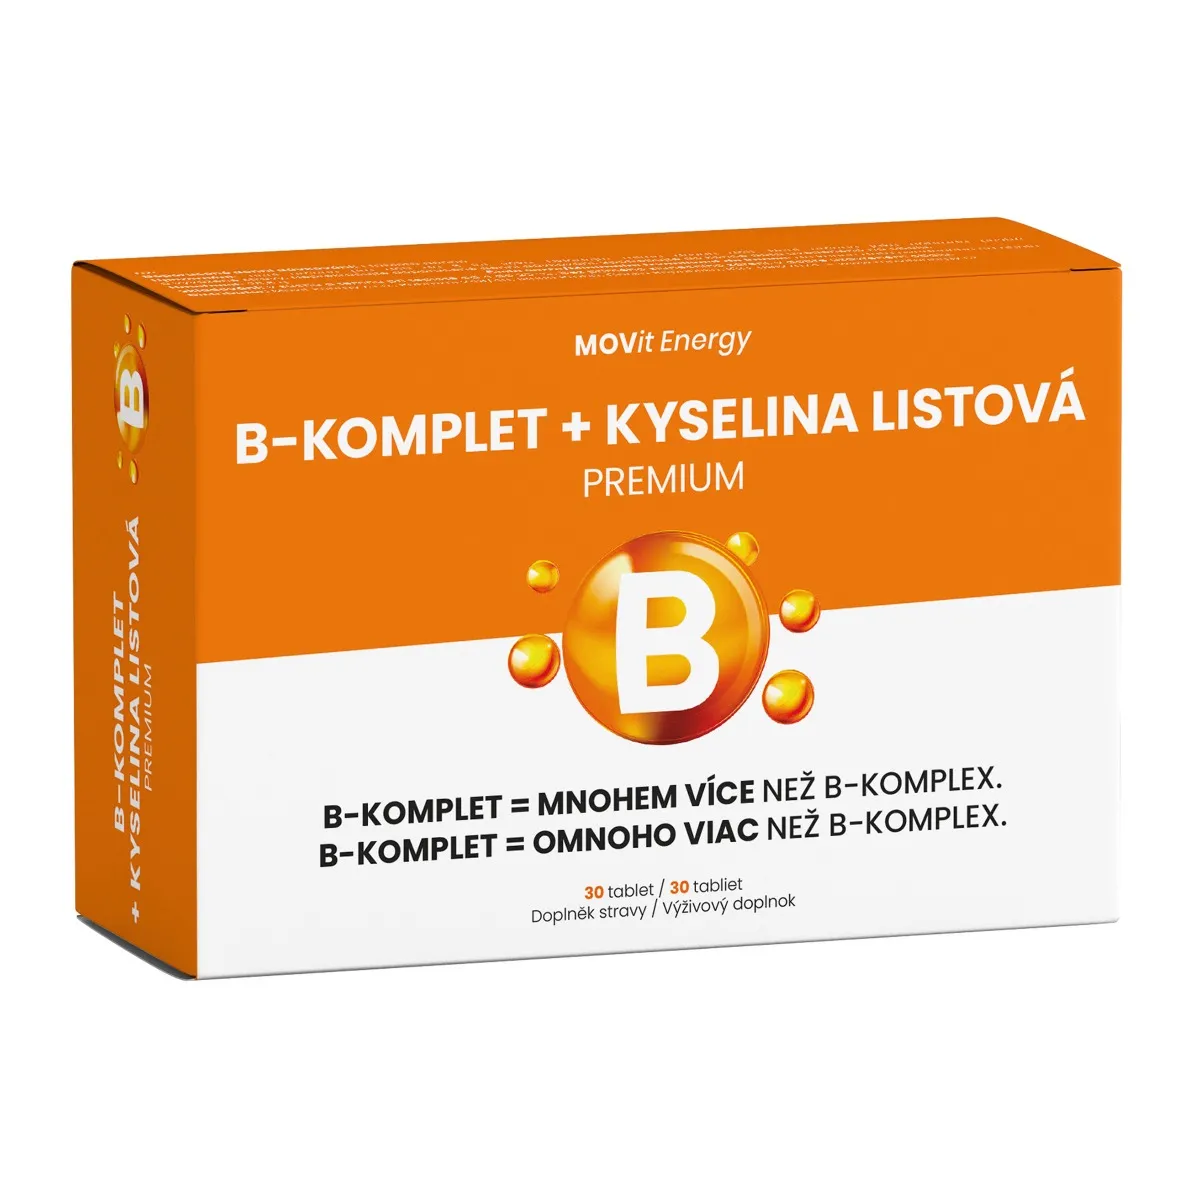 MOVit Energy B-Komplet + Kyselina listová PREMIUM 30 tablet